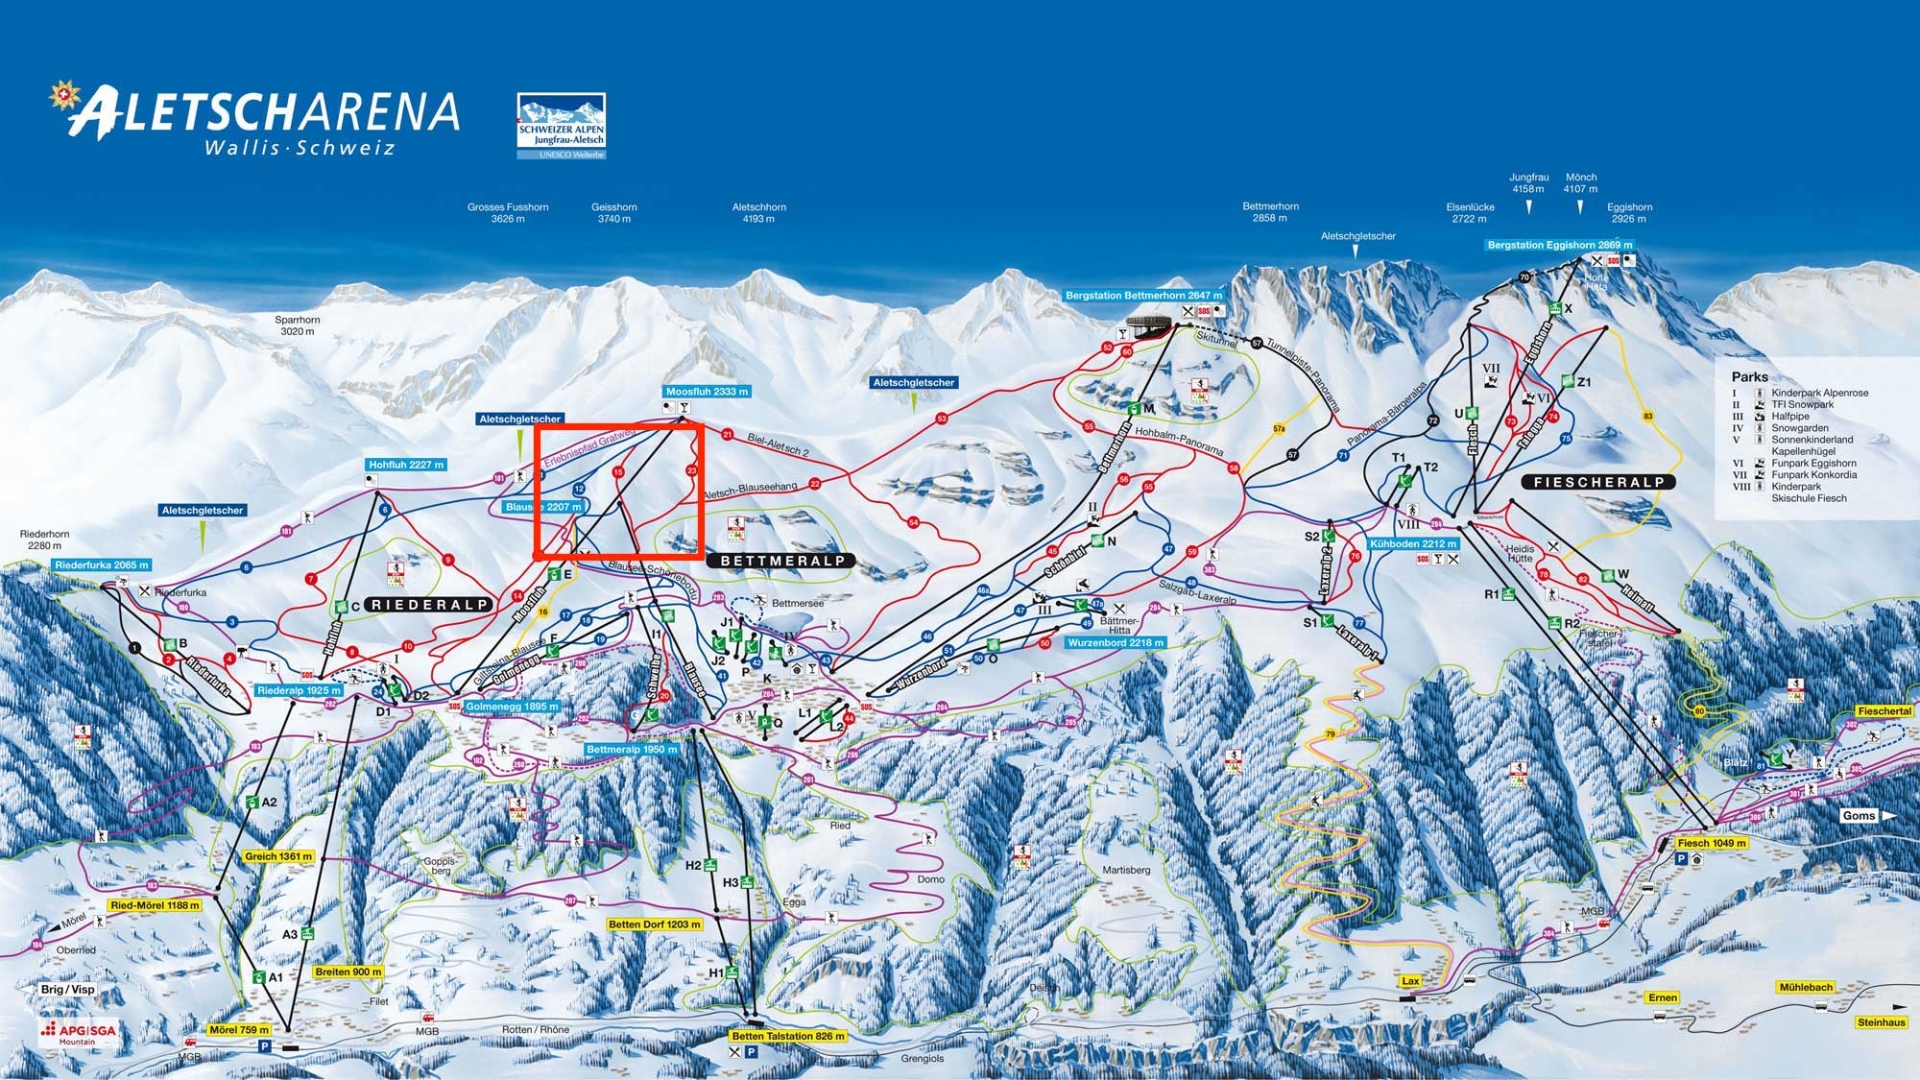 La piste Blauseehang, en encadré sur le plan, est une piste rouge du domaine skiable de l'Aletsch Arena.